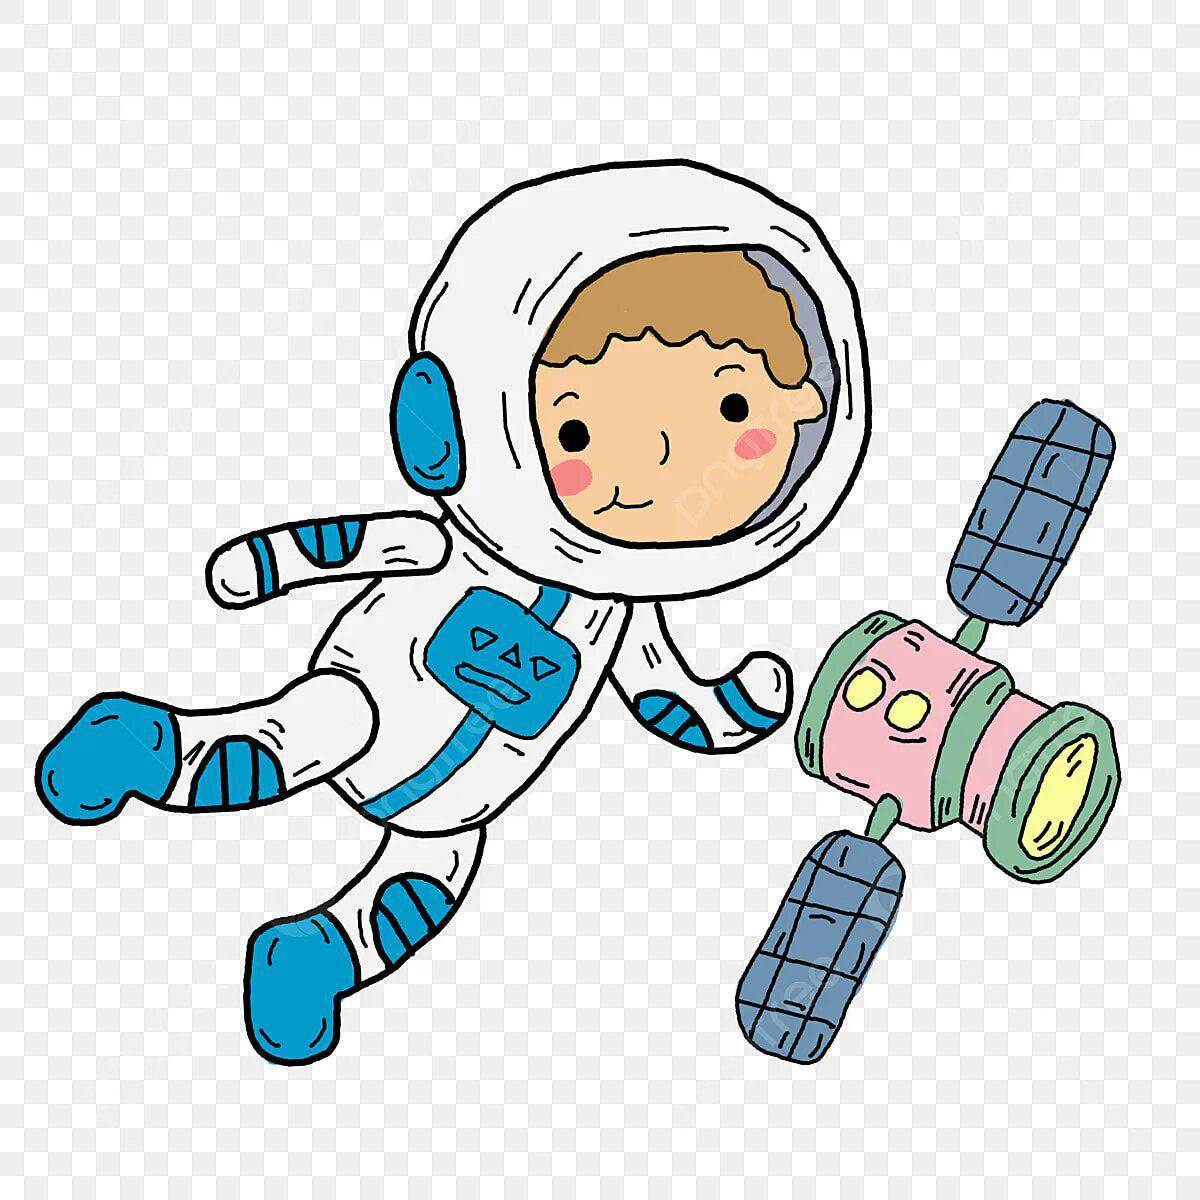 Космонавт рисунок цветной. Космонавт мультяшный. Космонавт мультяшка. Космонавт для детей. Космонавт на белом фоне.